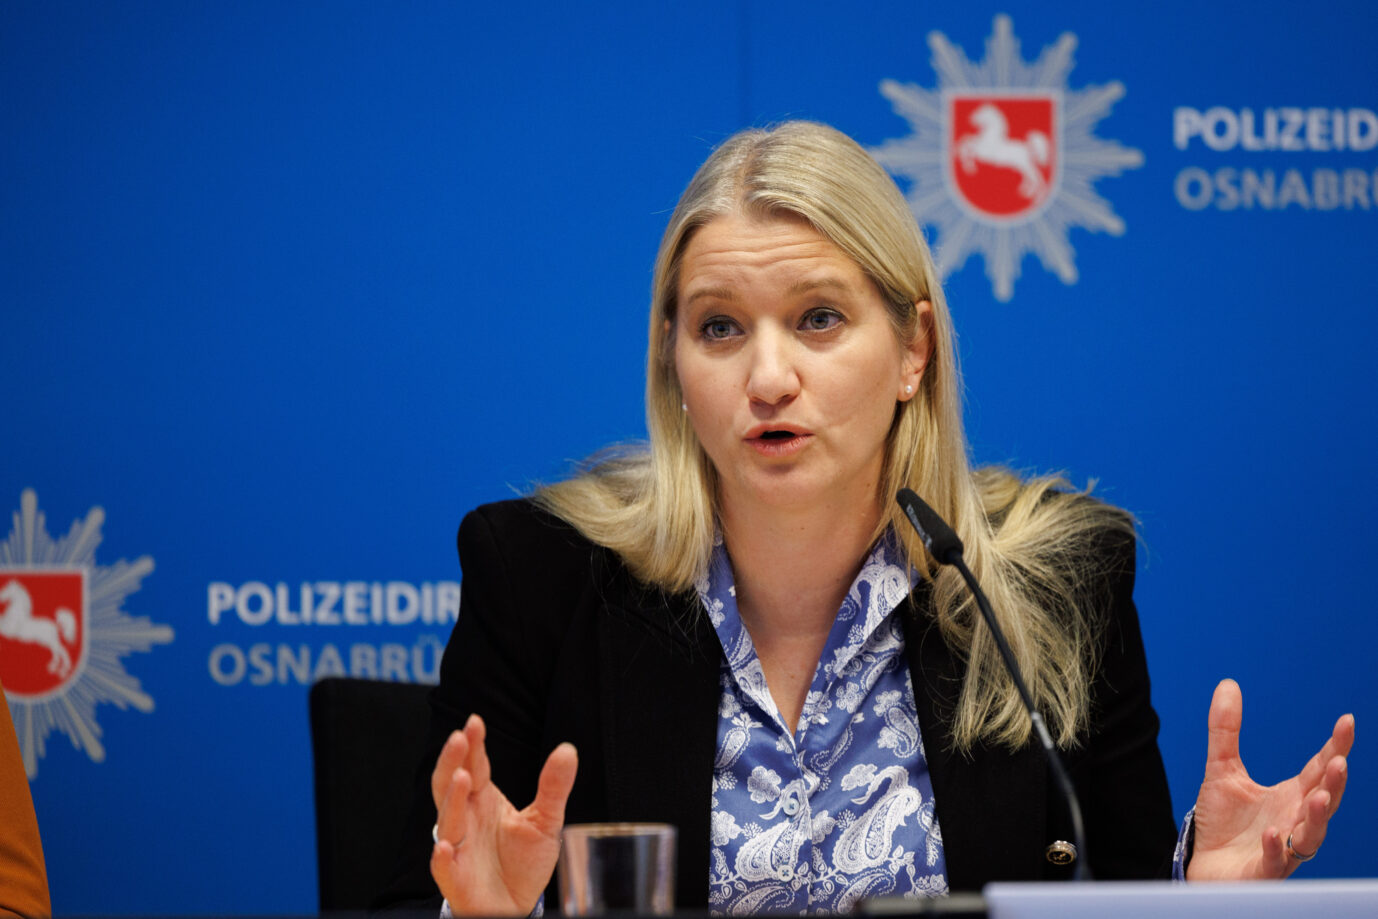 Die niedersächsische Justizministerin Kathrin Wahlmann (SPD) gestikuliert auf einer Presseveranstaltung. Im Hintergrund ist das Logo der niedersächsischen Polizei zu sehen. Sie fordert härtere Strafen für Vergewaltiger und Totschläger.